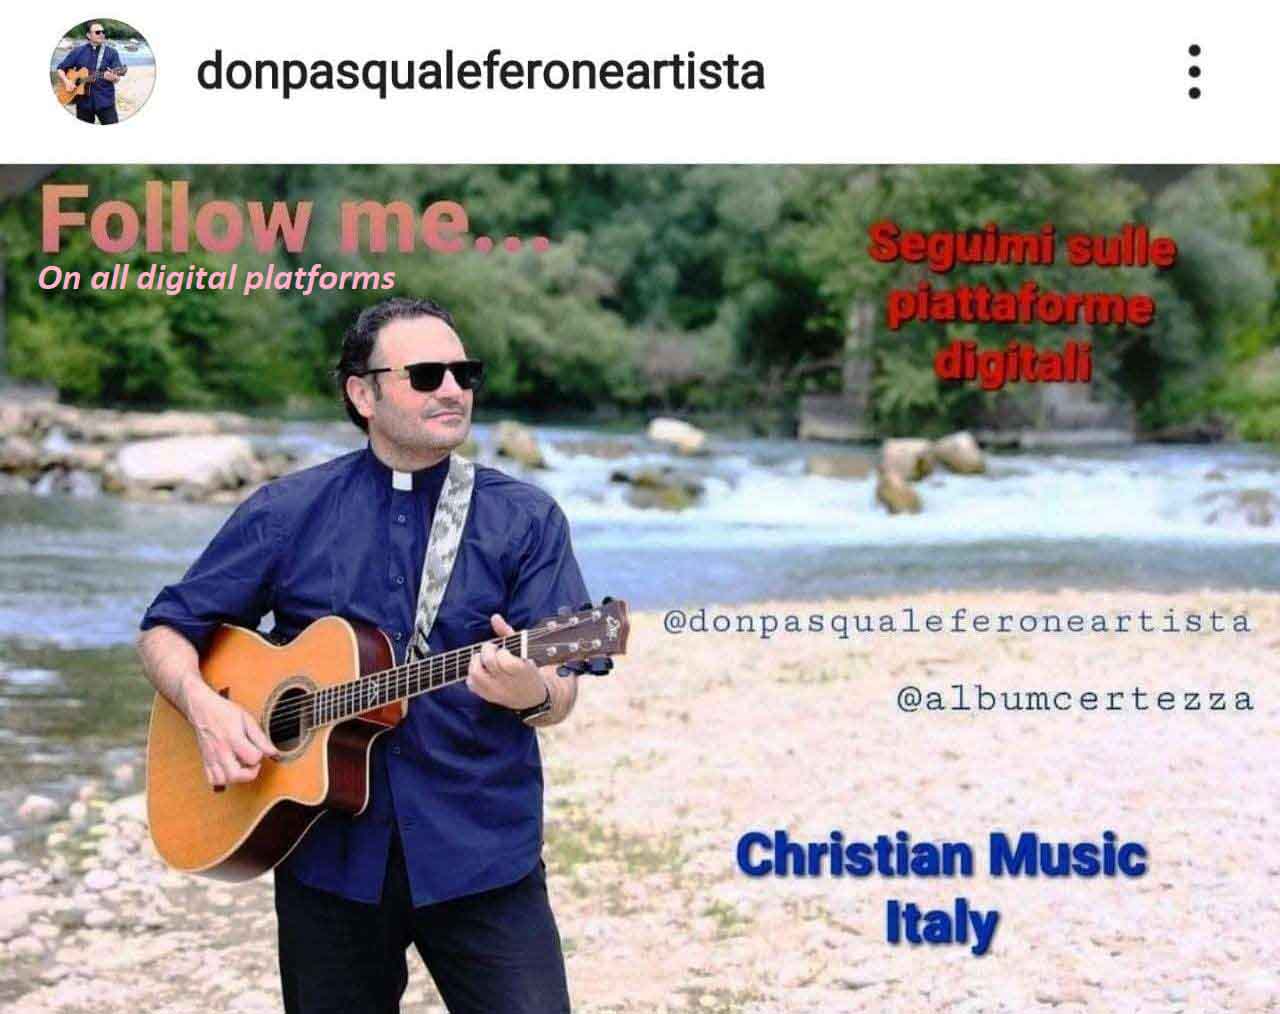 Don Pasquale Ferone, cantautore di Christian Music